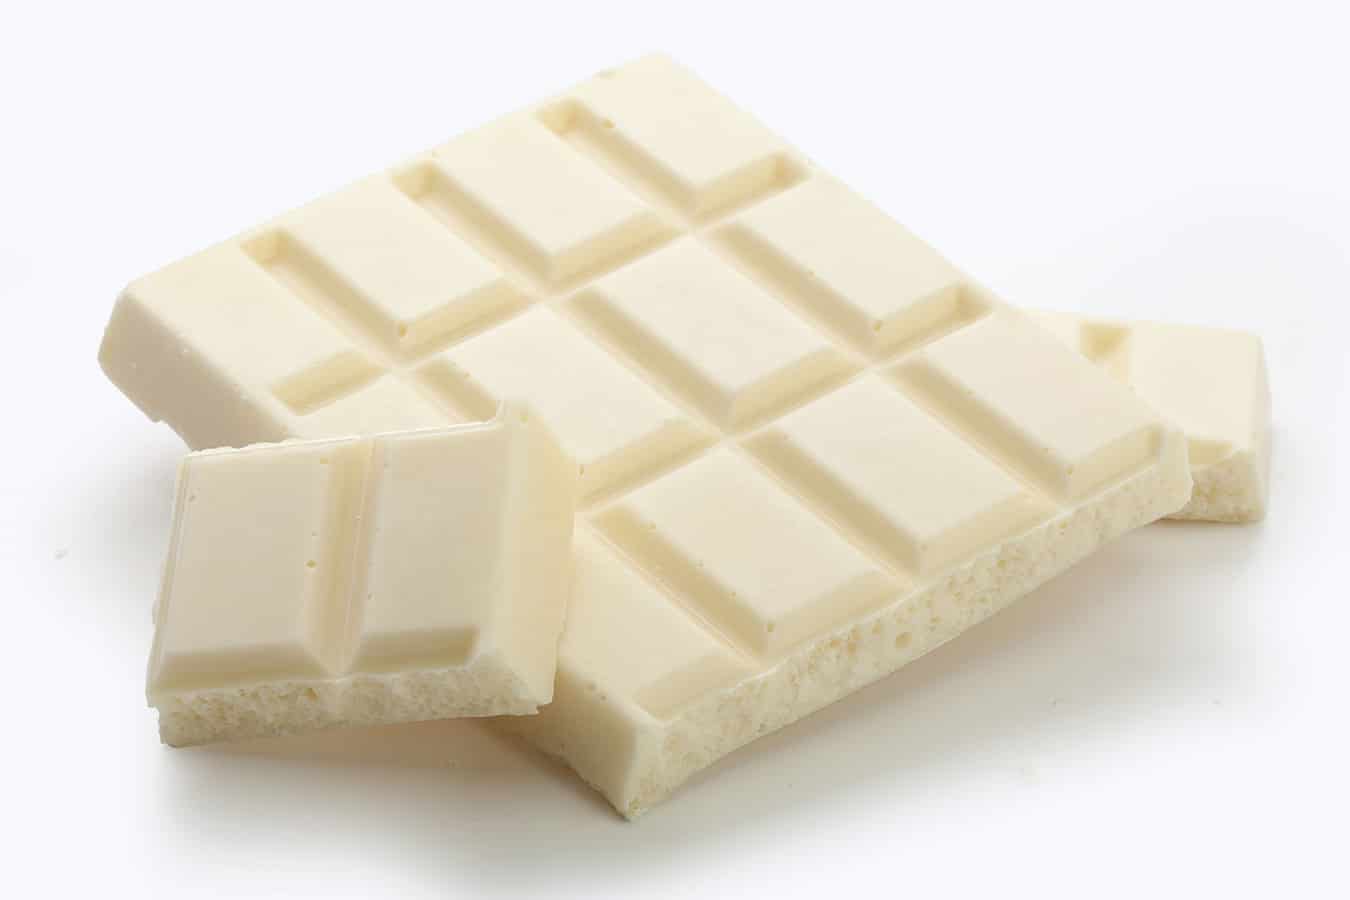 White chocolate bar.